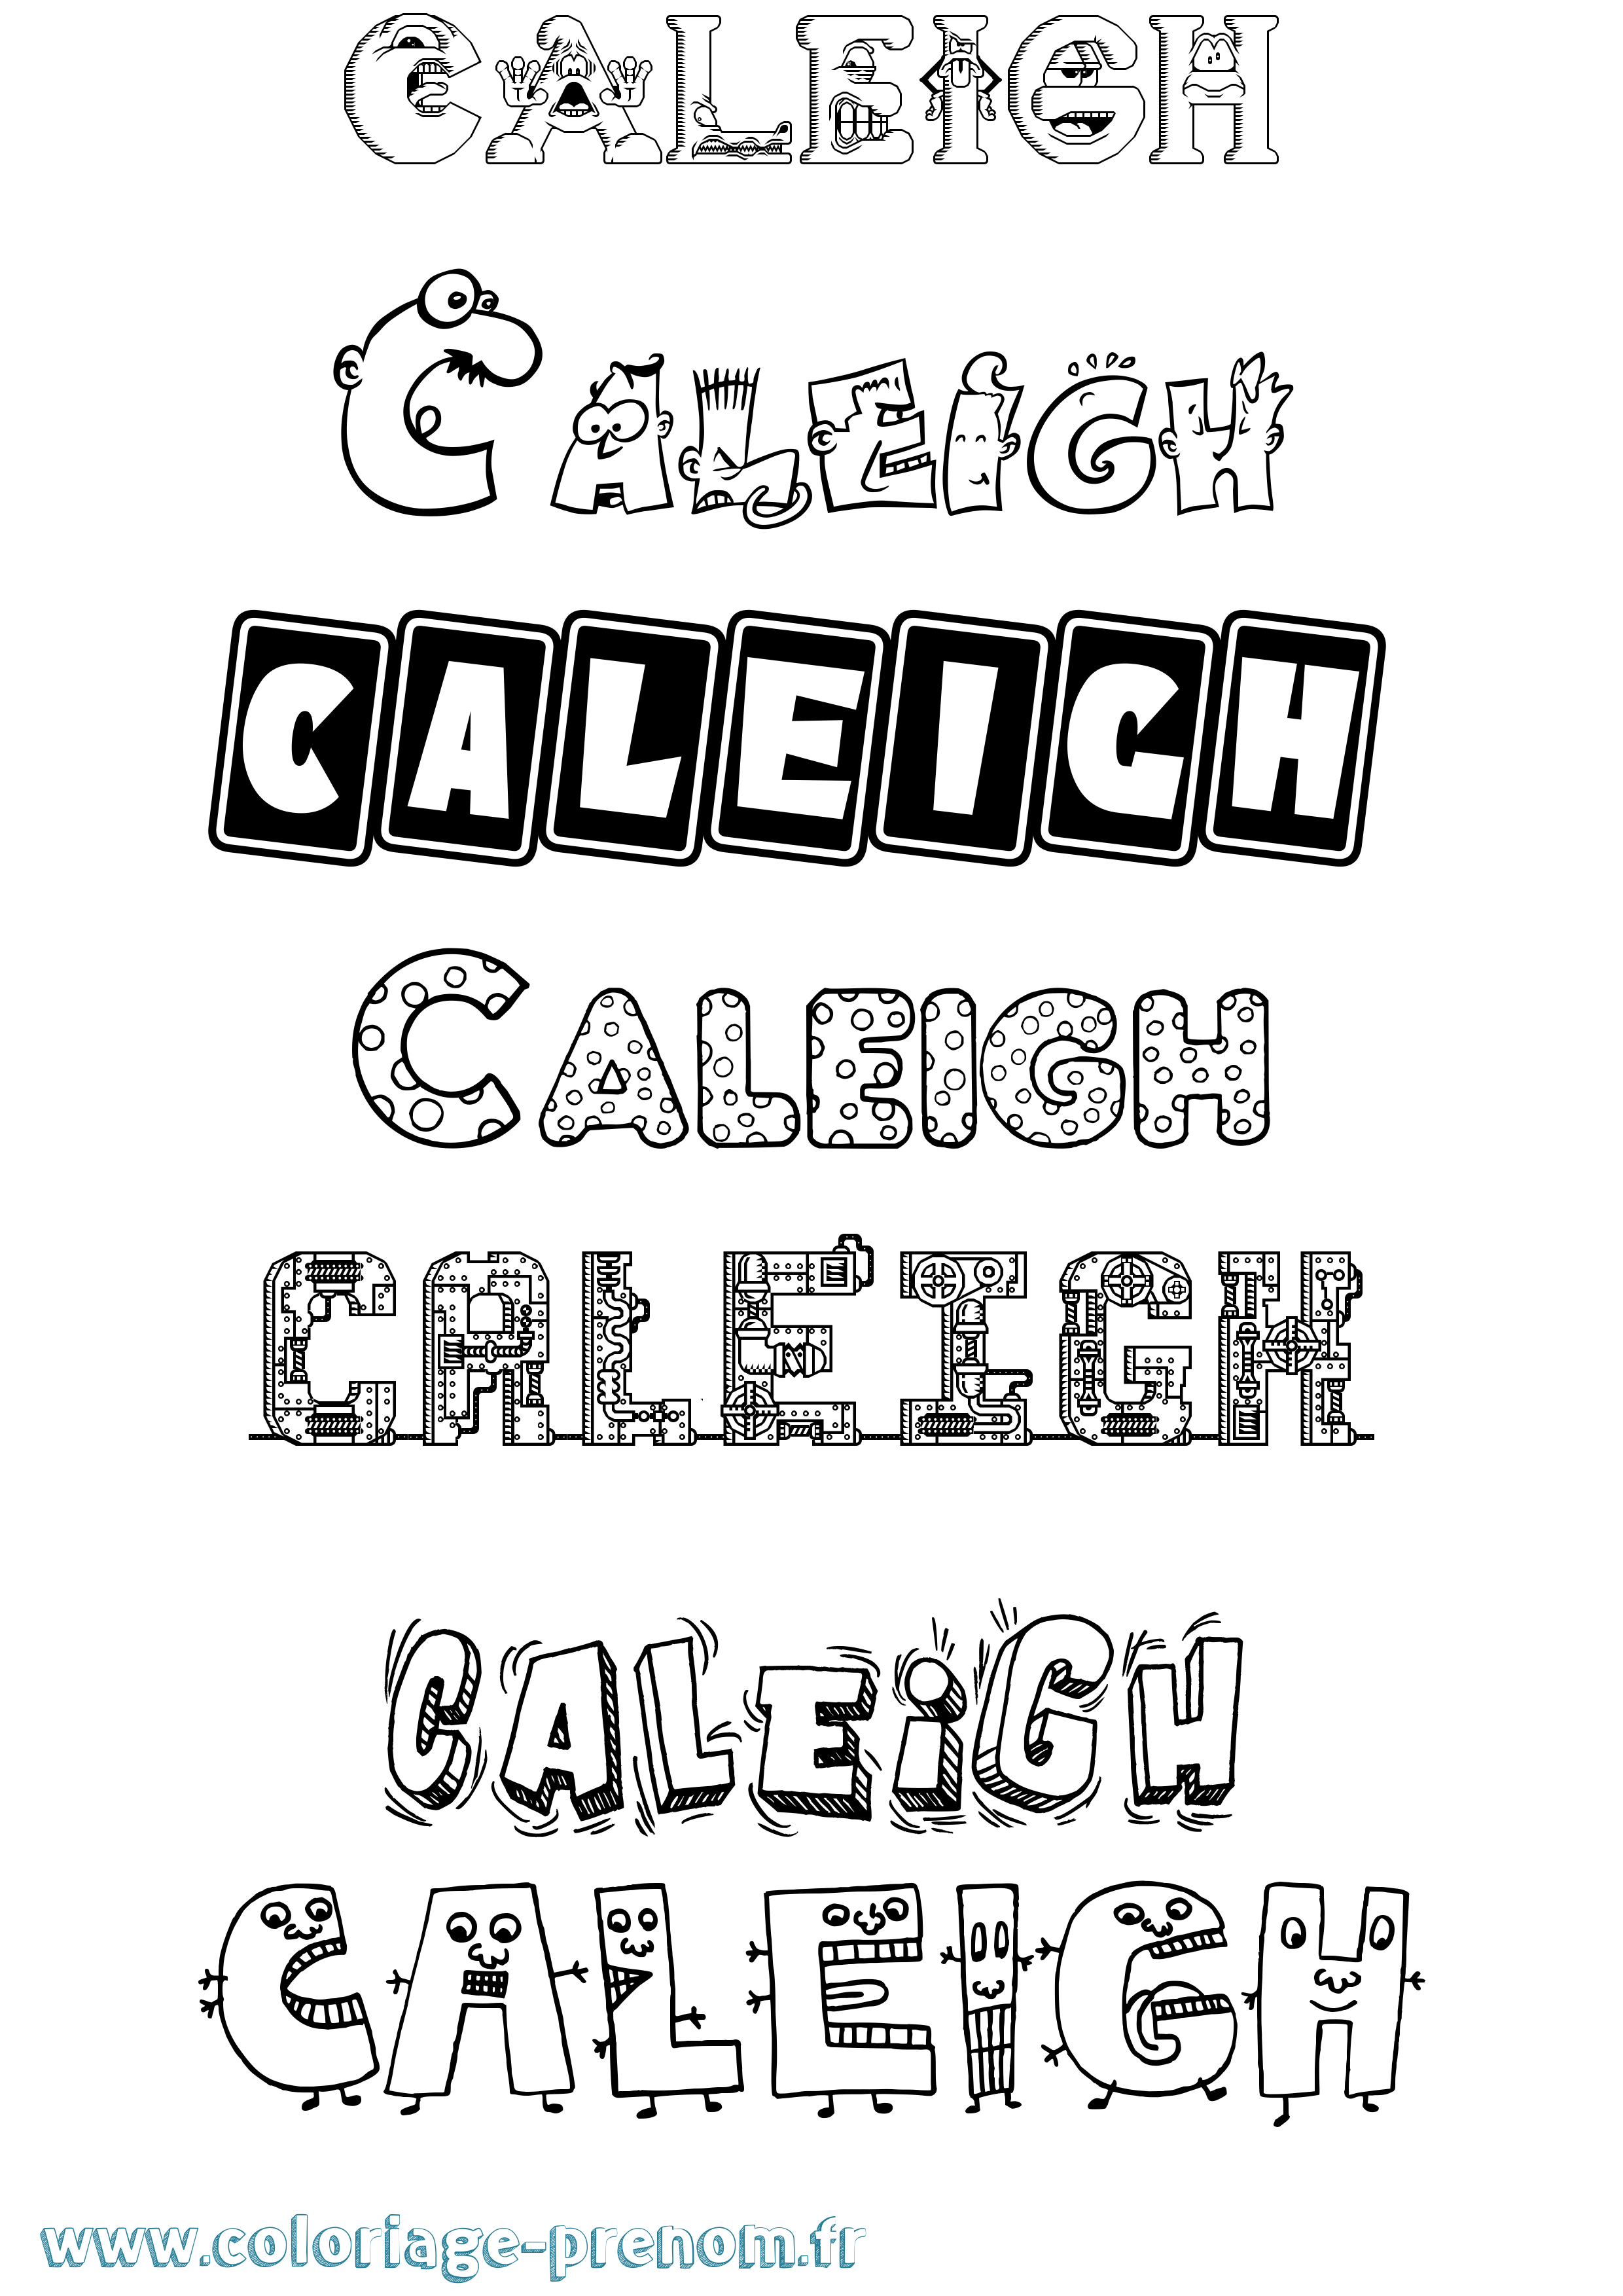 Coloriage prénom Caleigh Fun